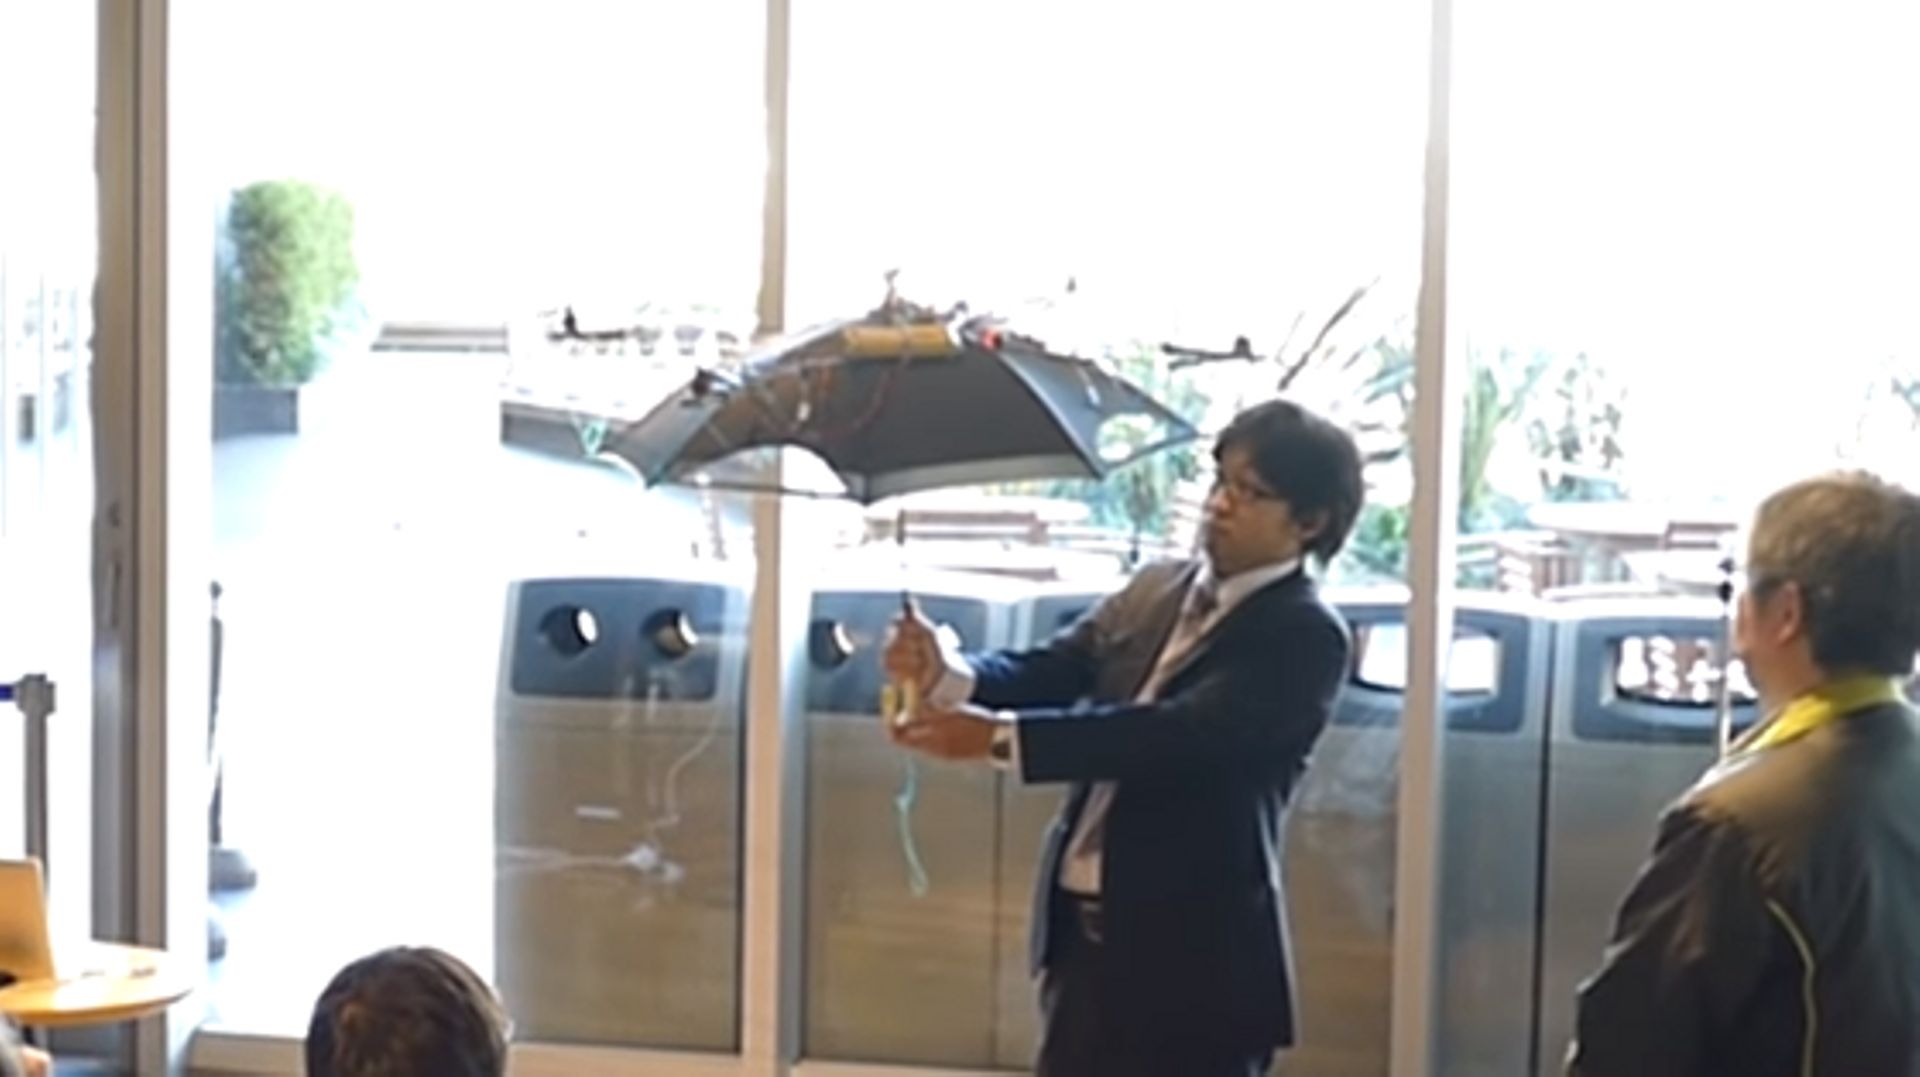 Japon: marchez toujours à l'ombre grâce au drone-parasol